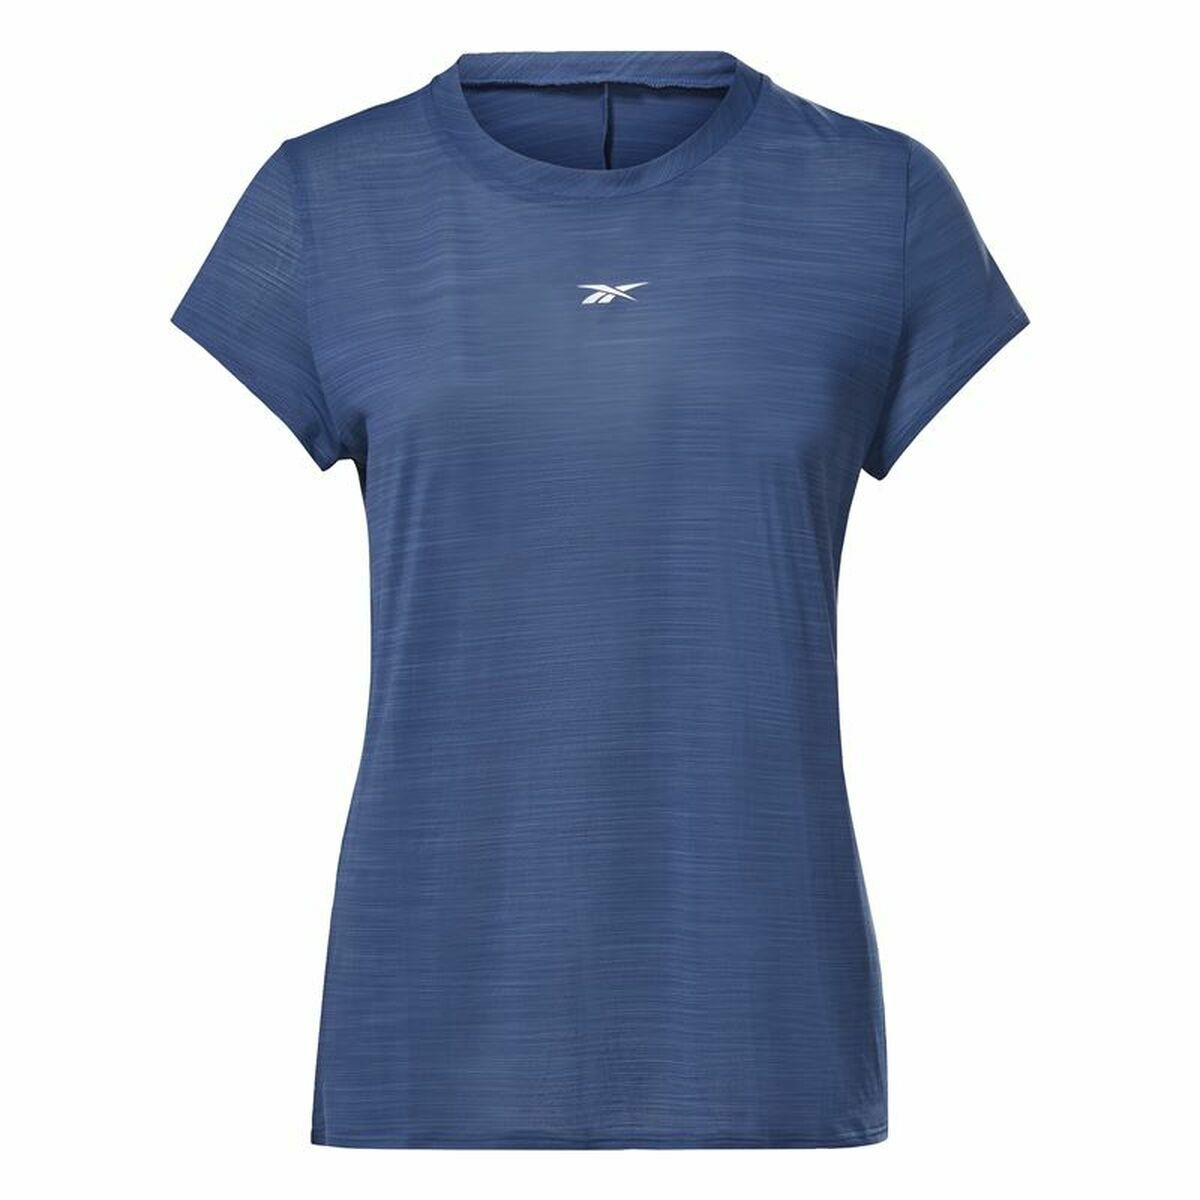 Osta tuote Naisten T-paita Reebok Workout Ready Tummansininen (Koko: S) verkkokaupastamme Korhone: Urheilu & Vapaa-aika 20% alennuksella koodilla VIIKONLOPPU